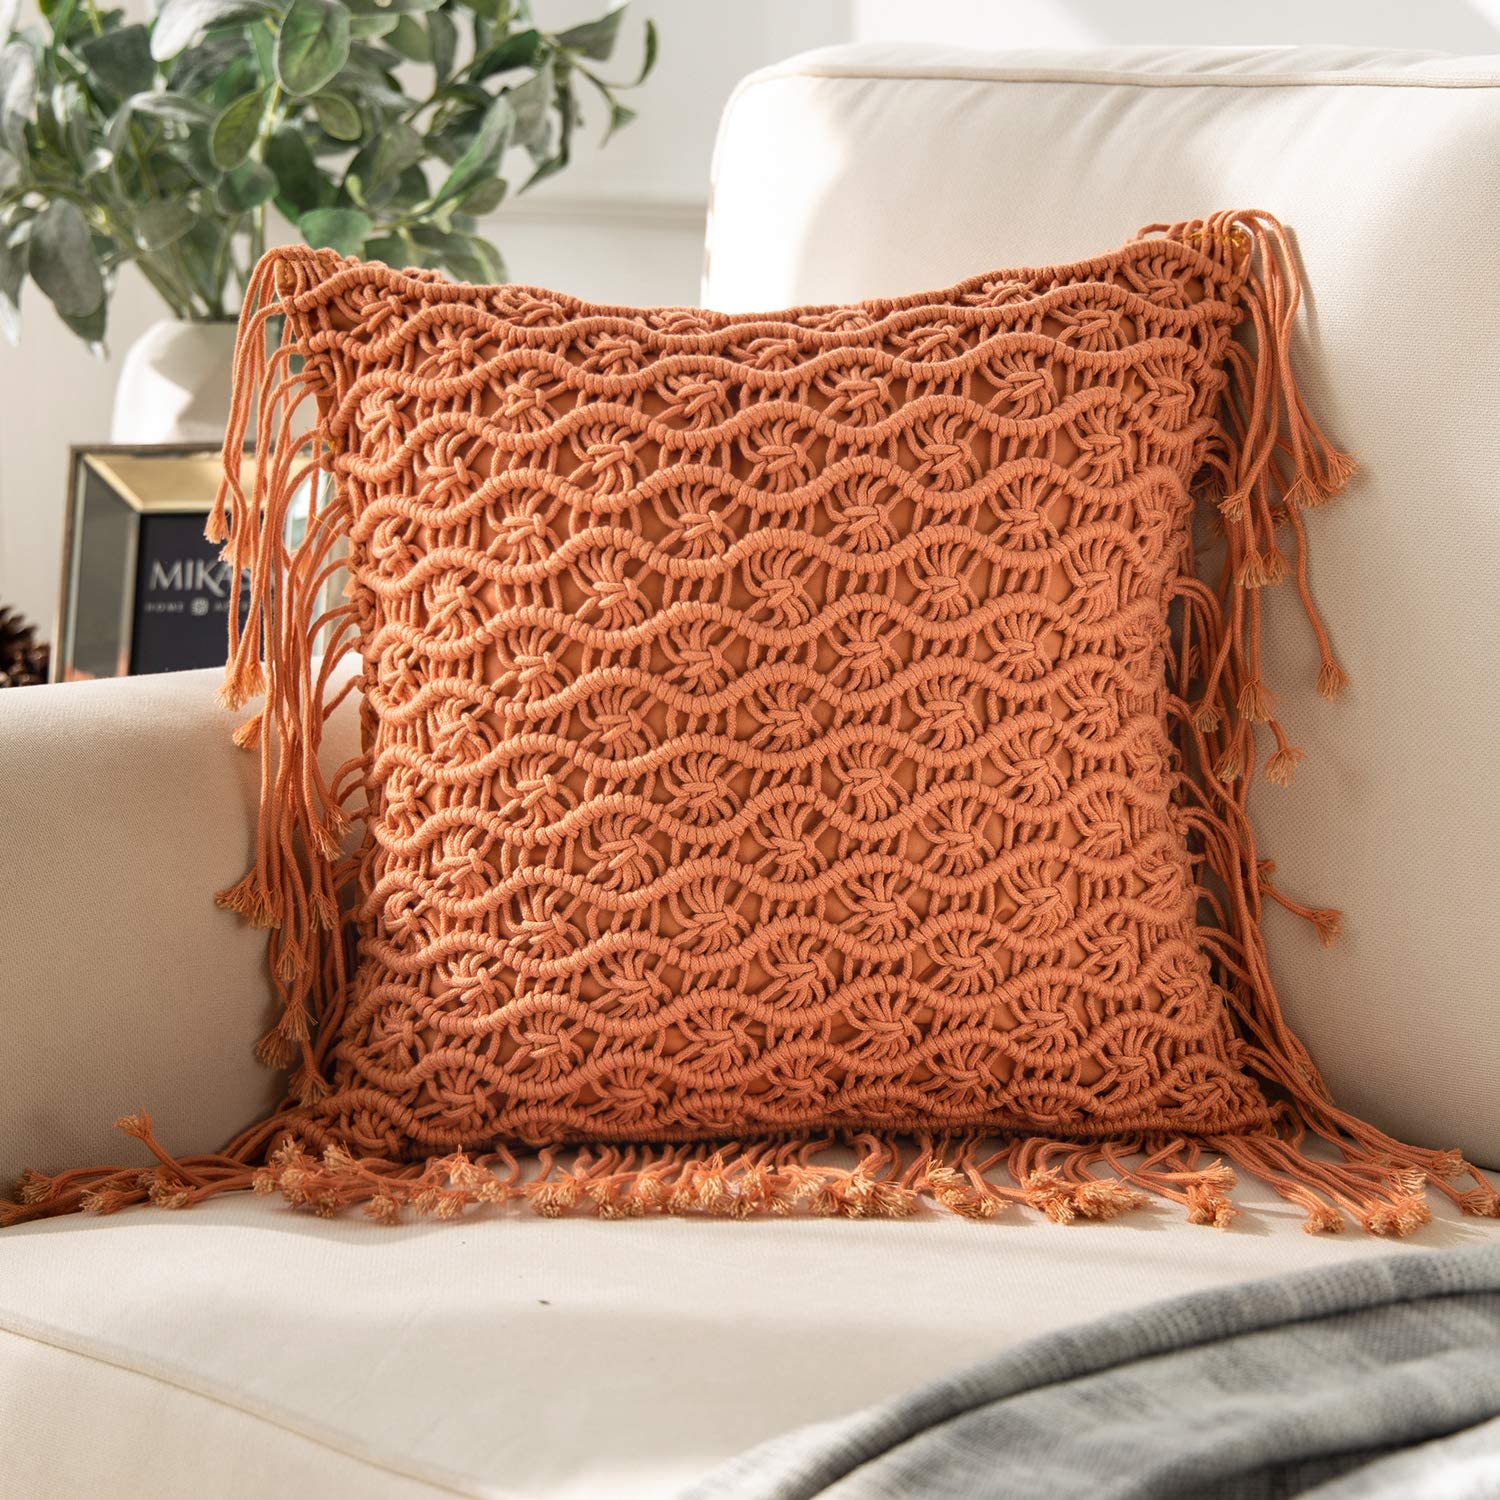 Handmade Crochet Woven Boho Throw Pillow with Tassels Cute